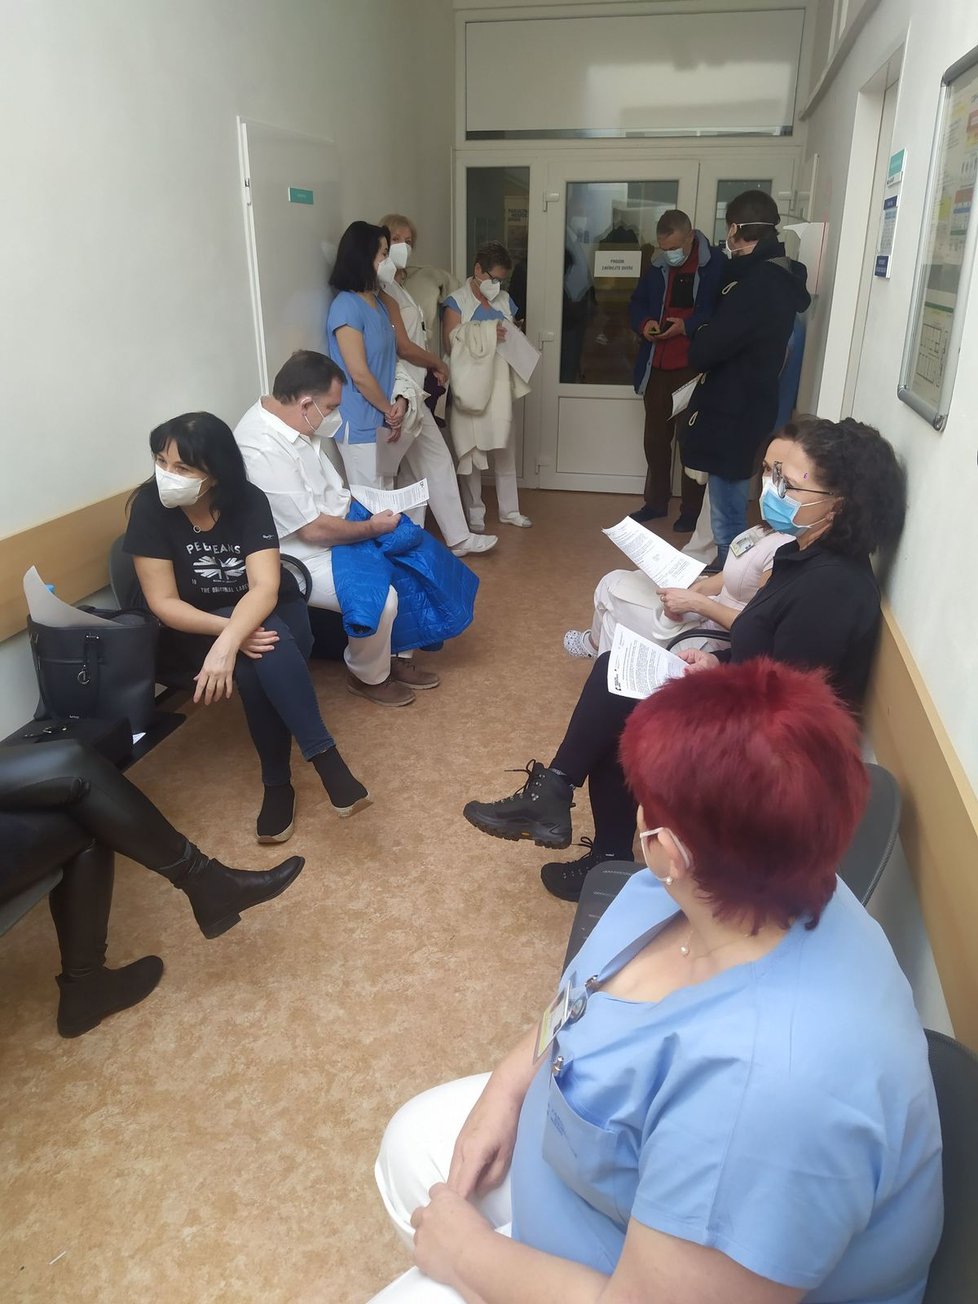 Ve Fakultní nemocnici Brno zahájili očkování proti covidu: Sestřičky z JIP čekají, až se na ně dostane řada (27.12.2020)